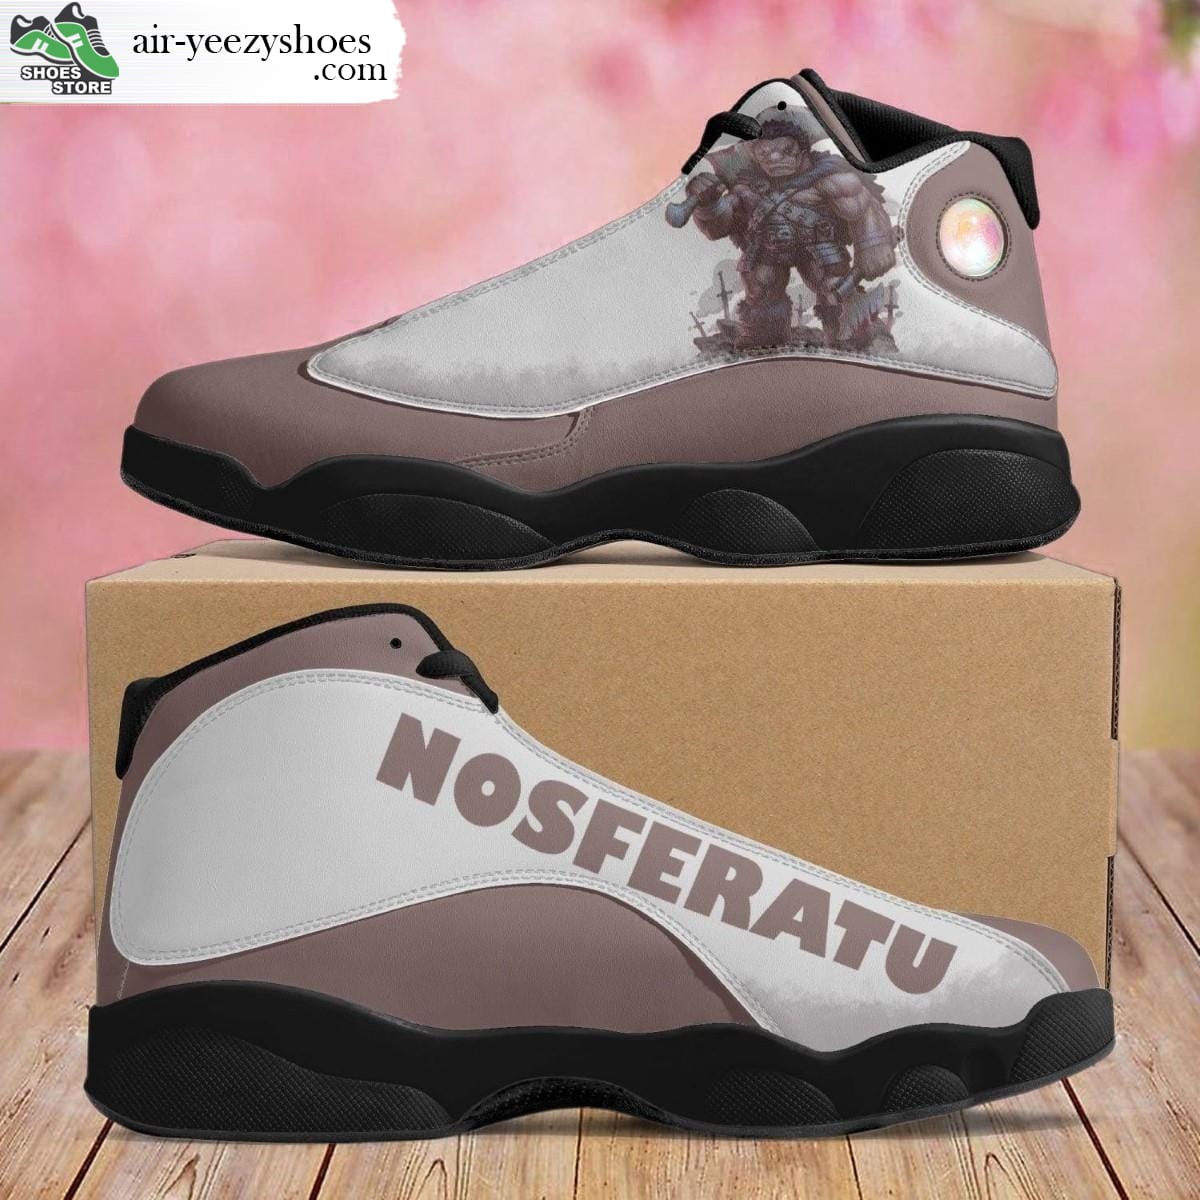 Nosferatu Jordan 13 Shoes